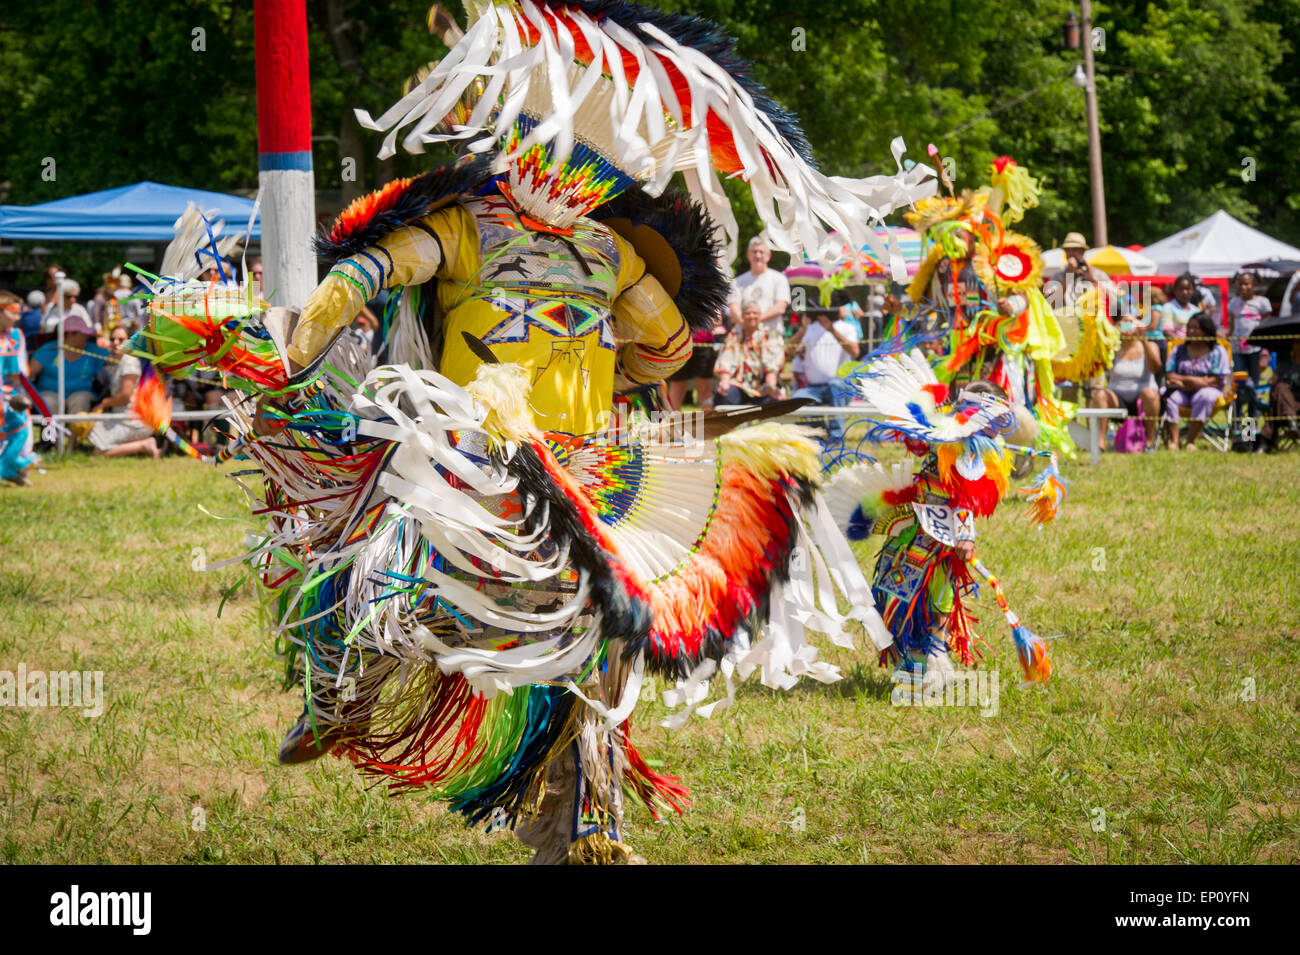 North American Indian bailando con personas vestidas con ropas tradicionales en Cedarville, Maryland, EE.UU. Foto de stock